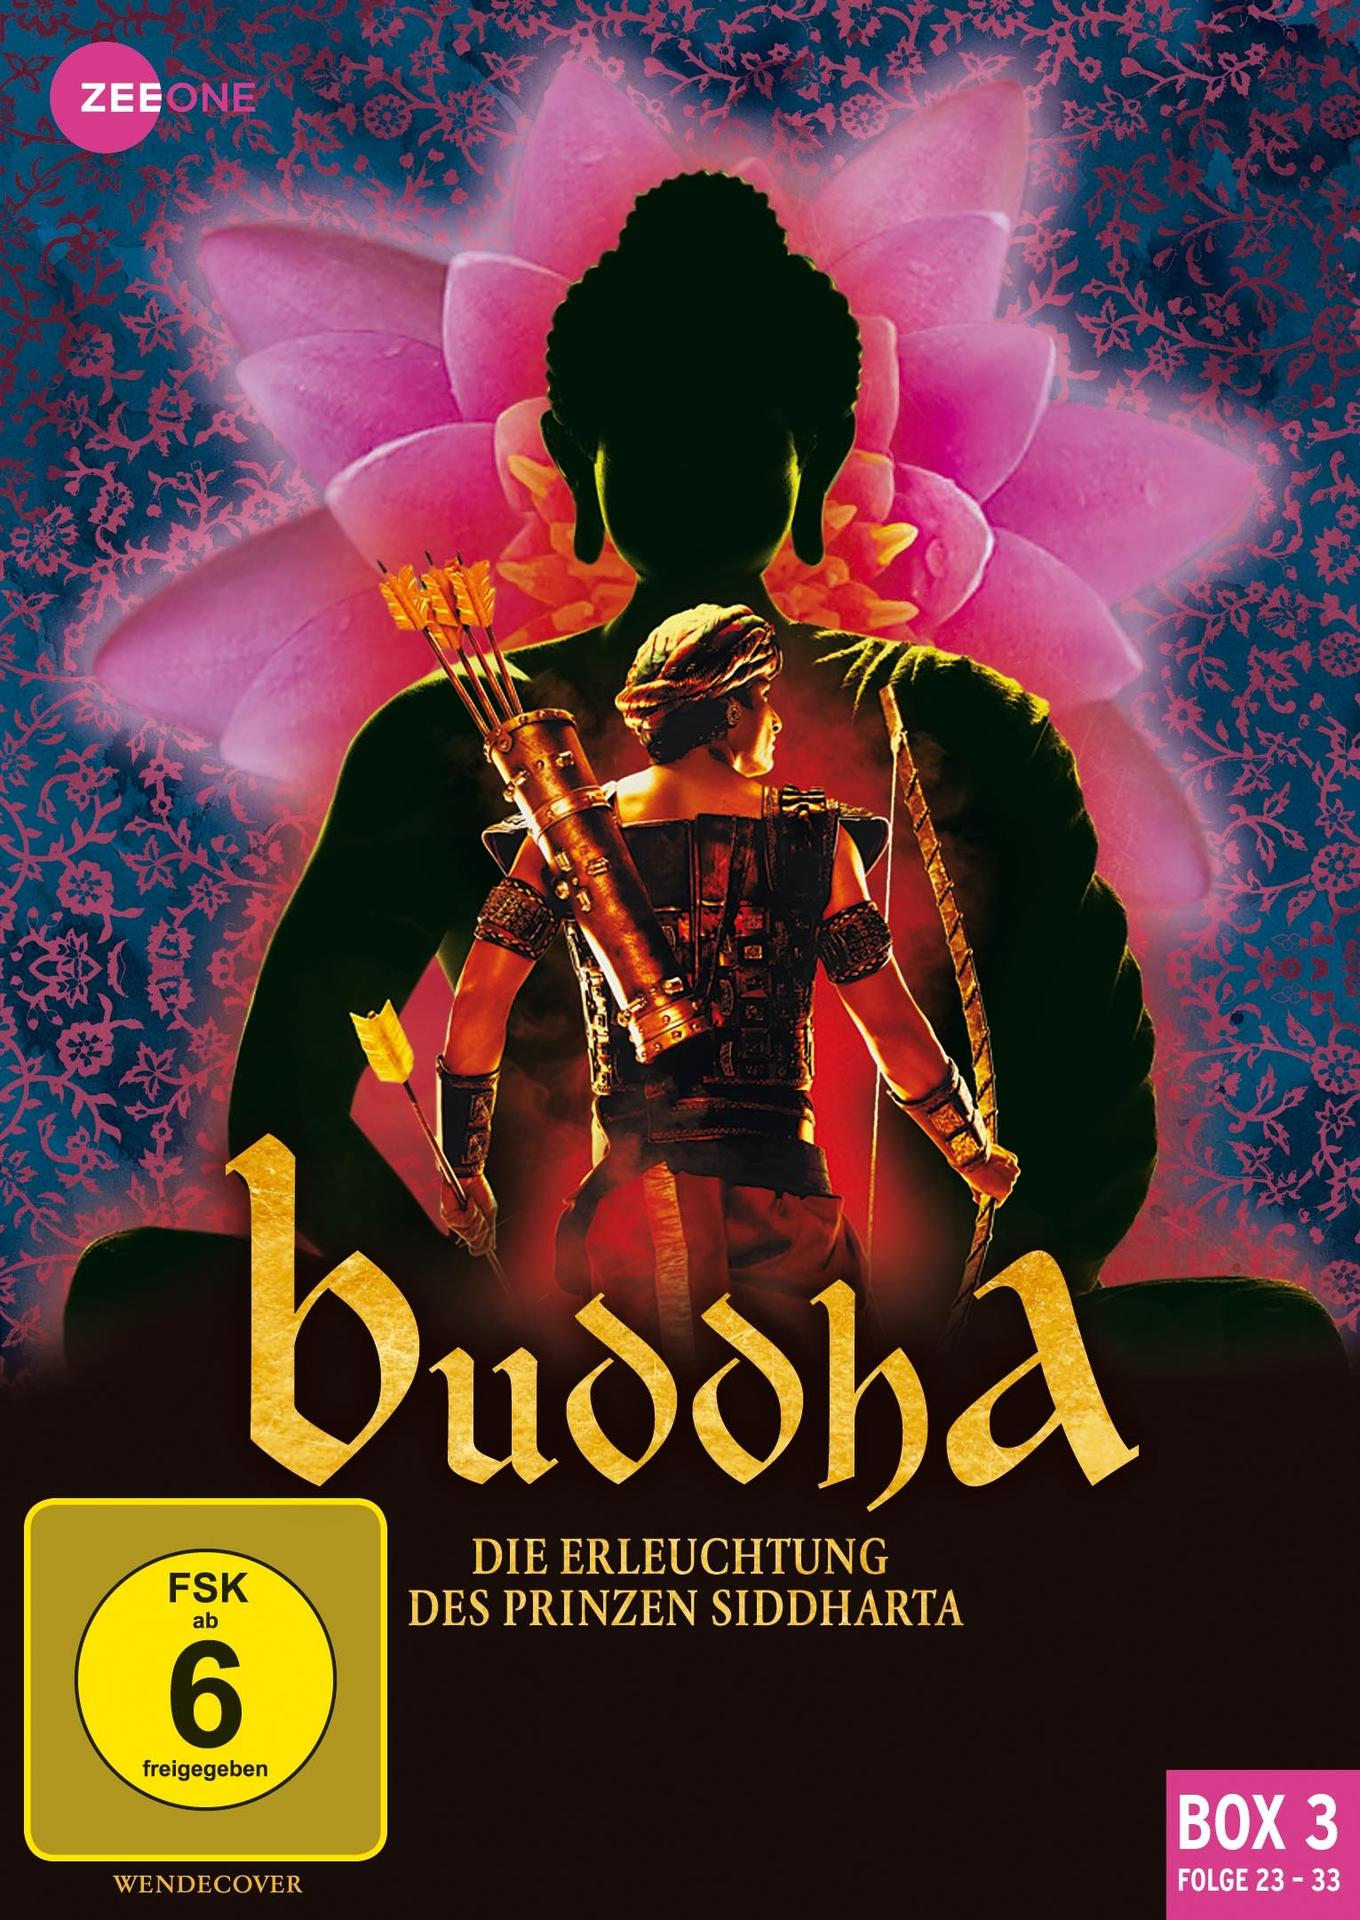 SIDDHARTA PRINZEN DES DVD ERLEUCHTUNG BUDDHA-DIE 23-33